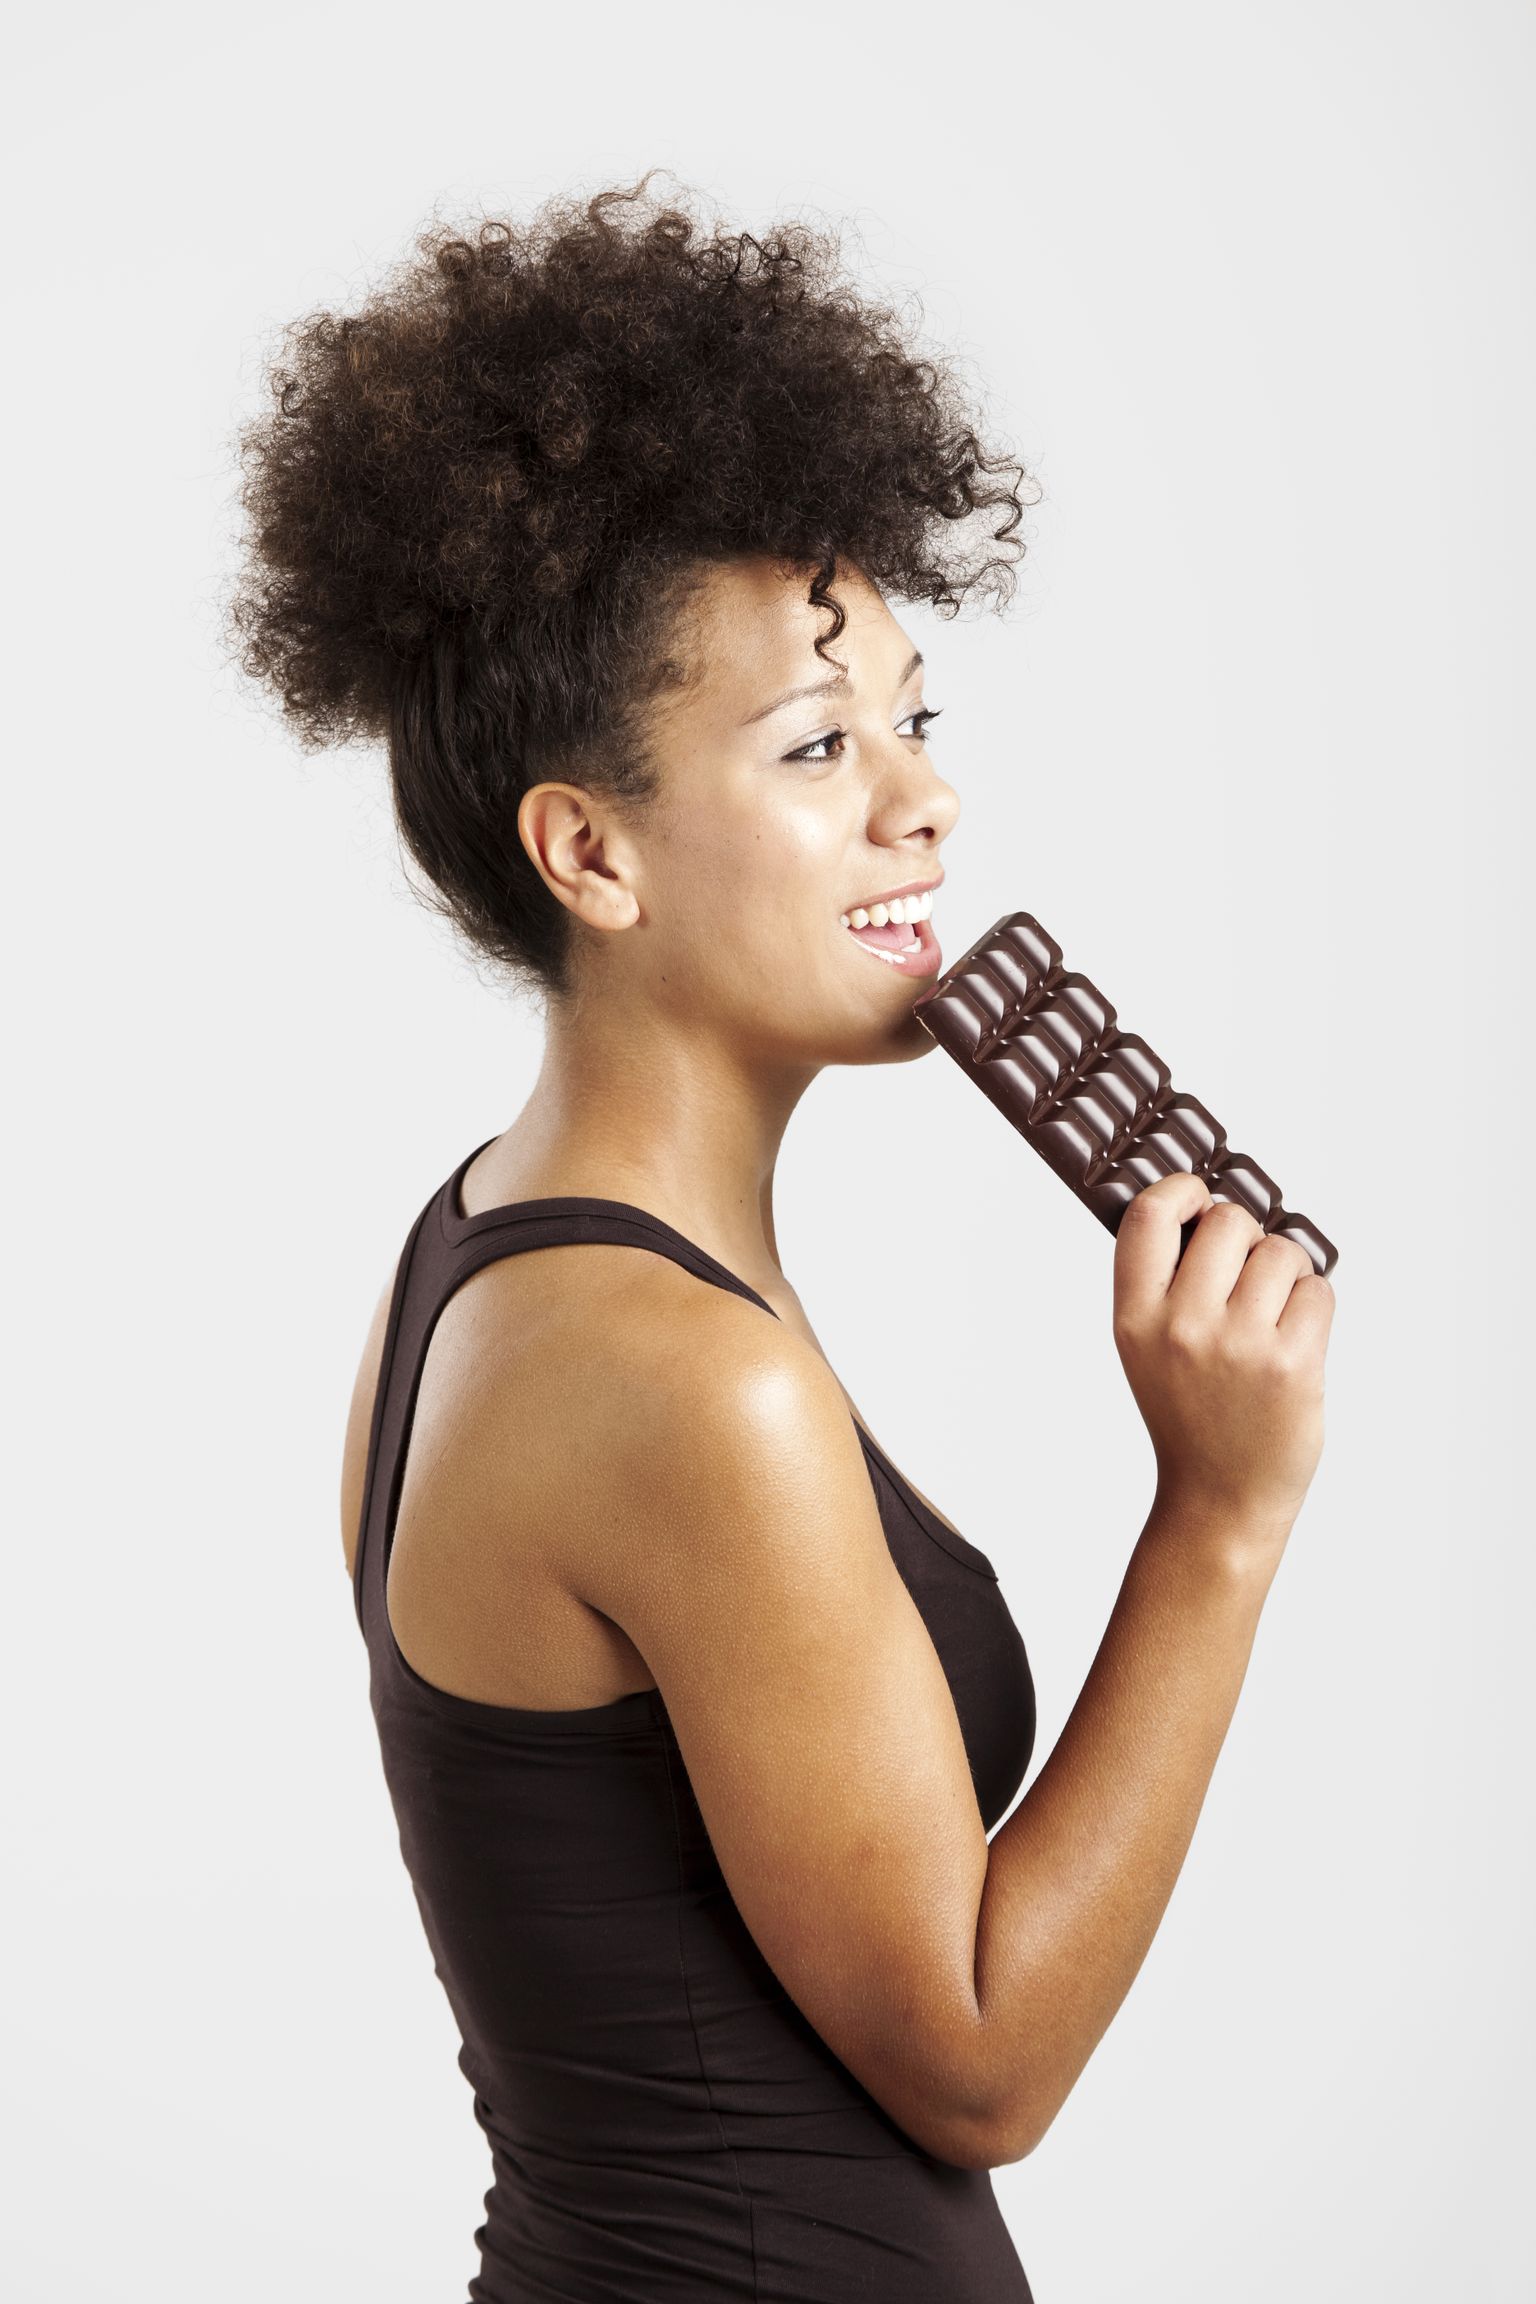 Женщина ест шоколад. Иллюстративное фото.